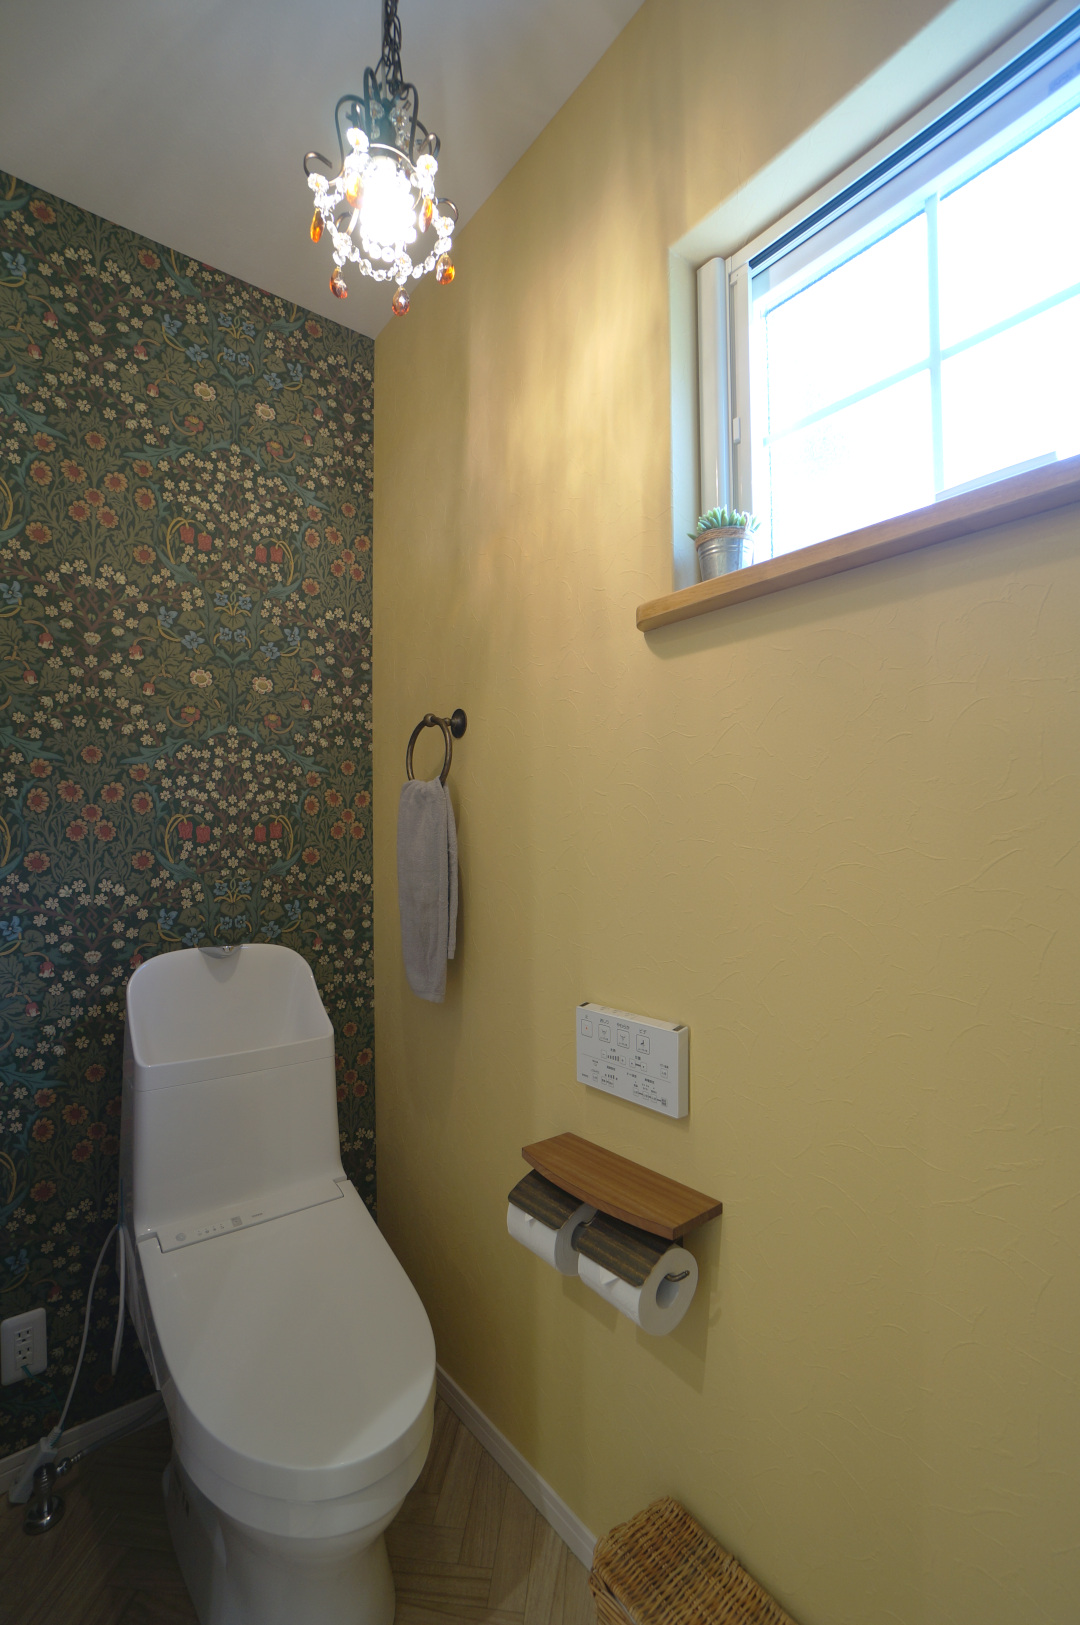 トイレ◆おしゃれなウィリアムモリス壁紙をアクセントにアンティークなシャンデリア照明が海外っぽいトイレ空間